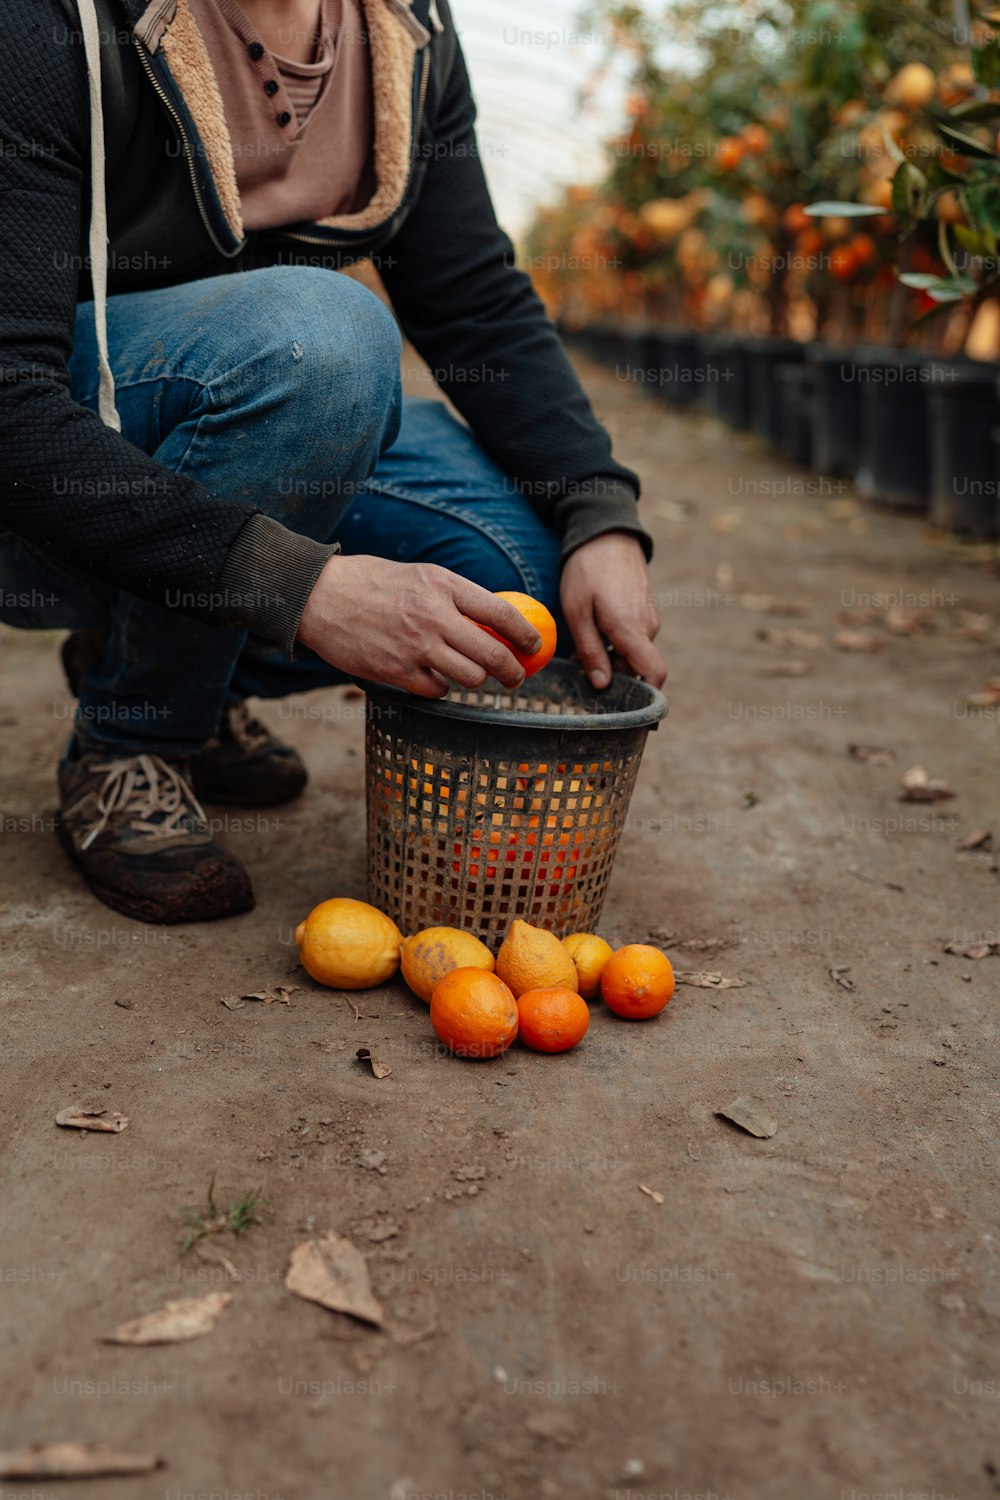 Una persona arrodillada recogiendo naranjas de una canasta